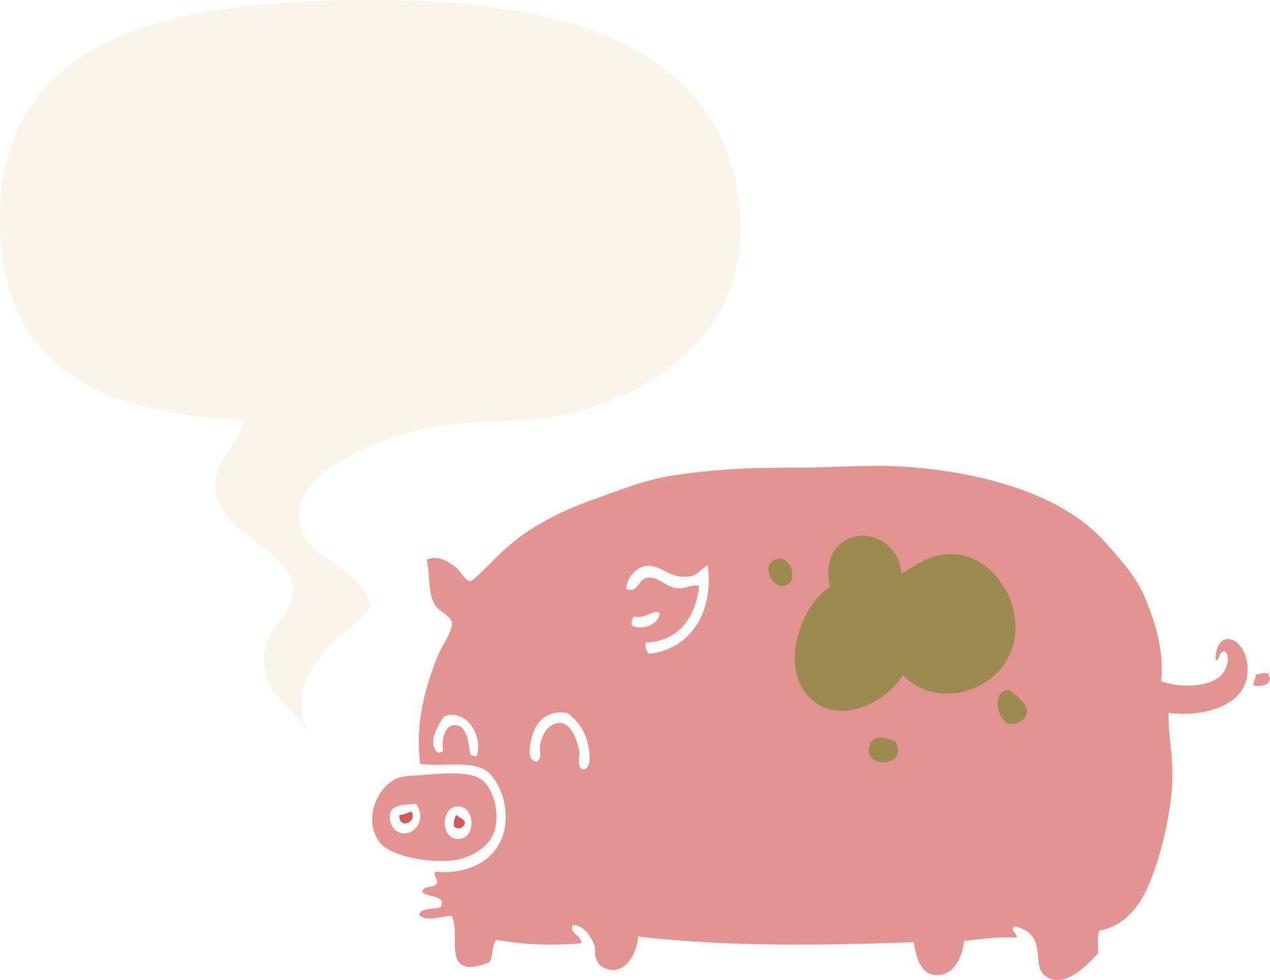 cochon de dessin animé mignon et bulle de dialogue dans un style rétro vecteur